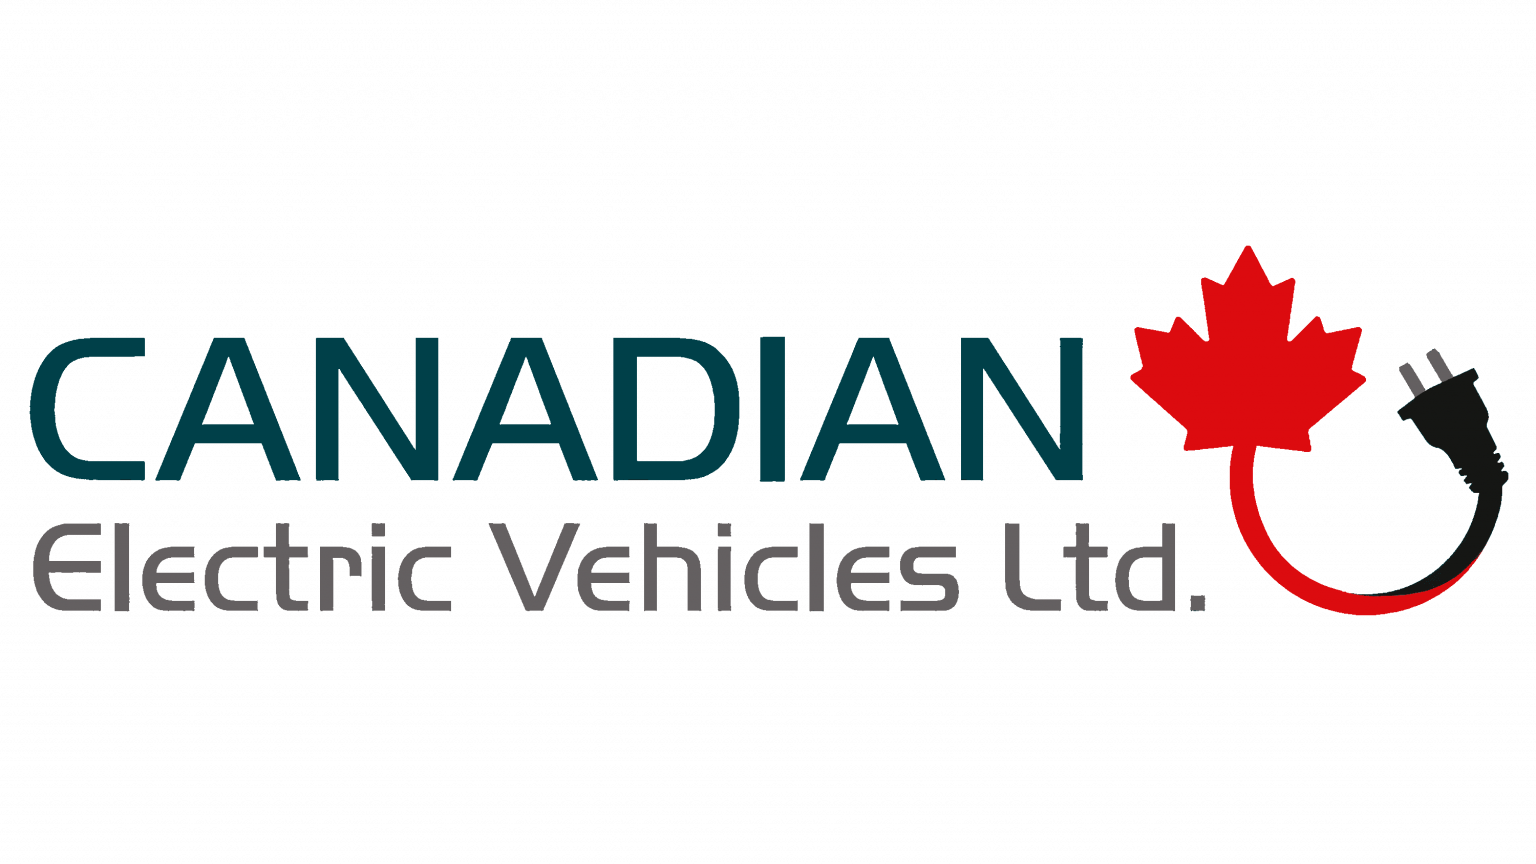 Canada car brands manufacturer car companies, logos